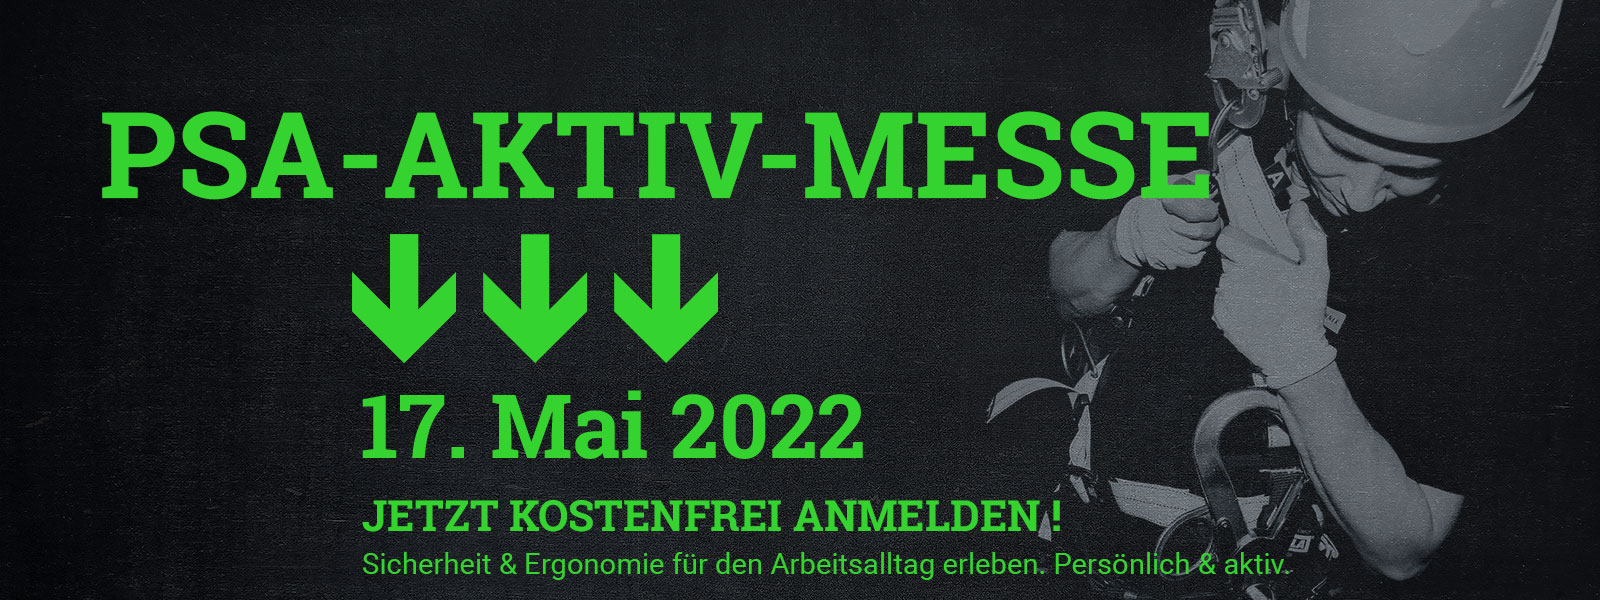 Mann mit Helm und Handschuhen in Sicherheitsgurt, grüner Text mit Einladung zur PSA-Aktiv-Messe am 17. Mai 2022